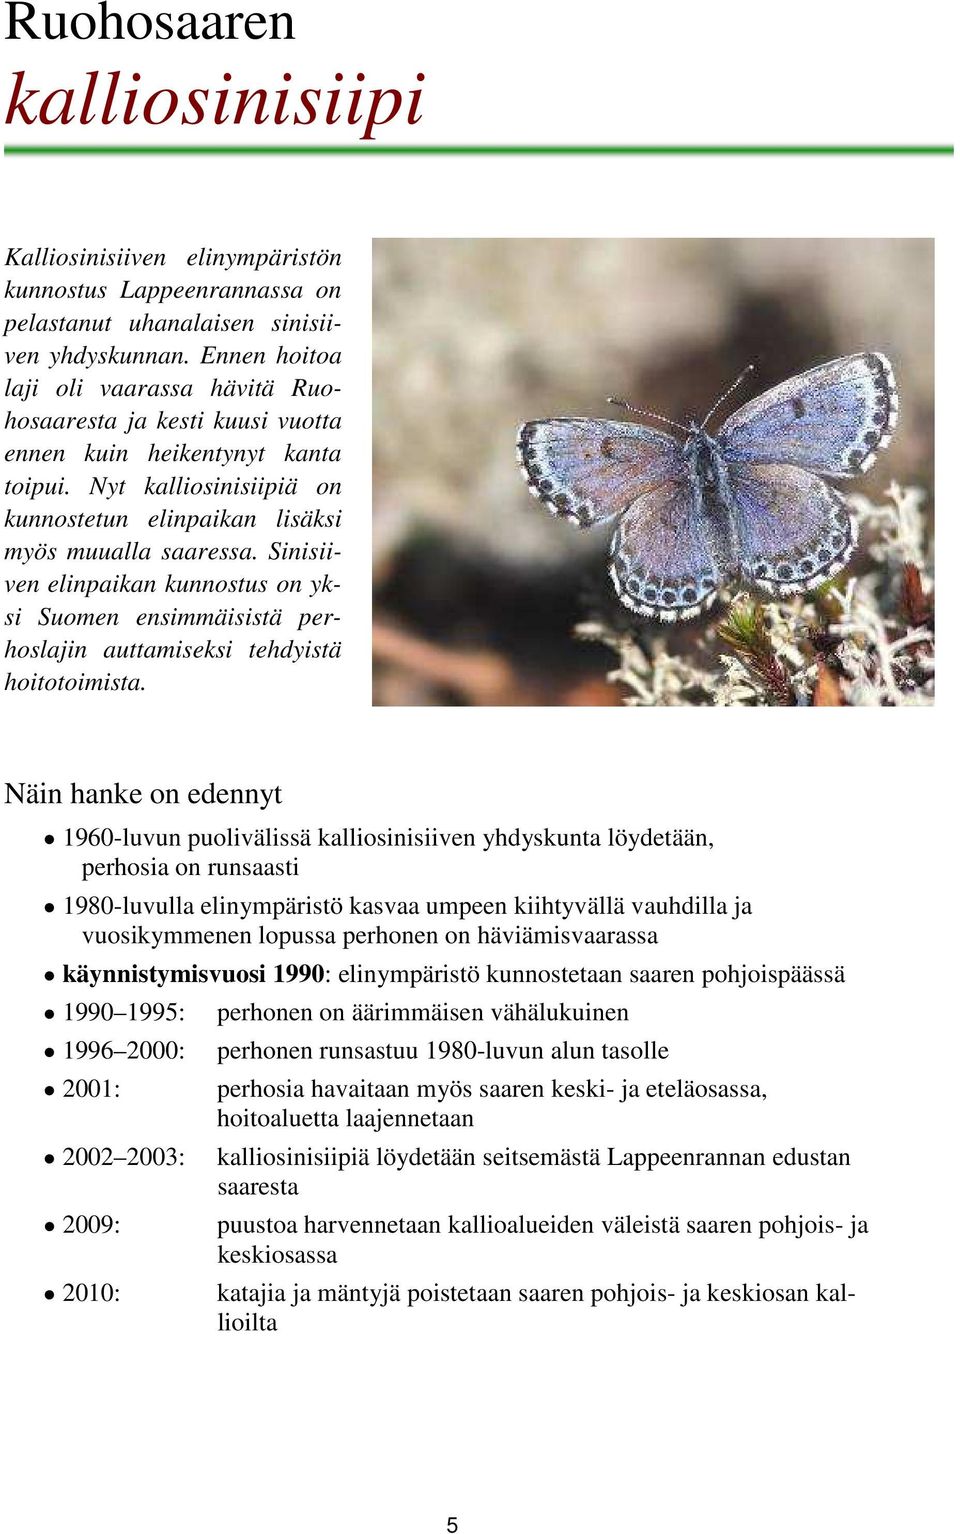 Sinisiiven elinpaikan kunnostus on yksi Suomen ensimmäisistä perhoslajin auttamiseksi tehdyistä hoitotoimista.